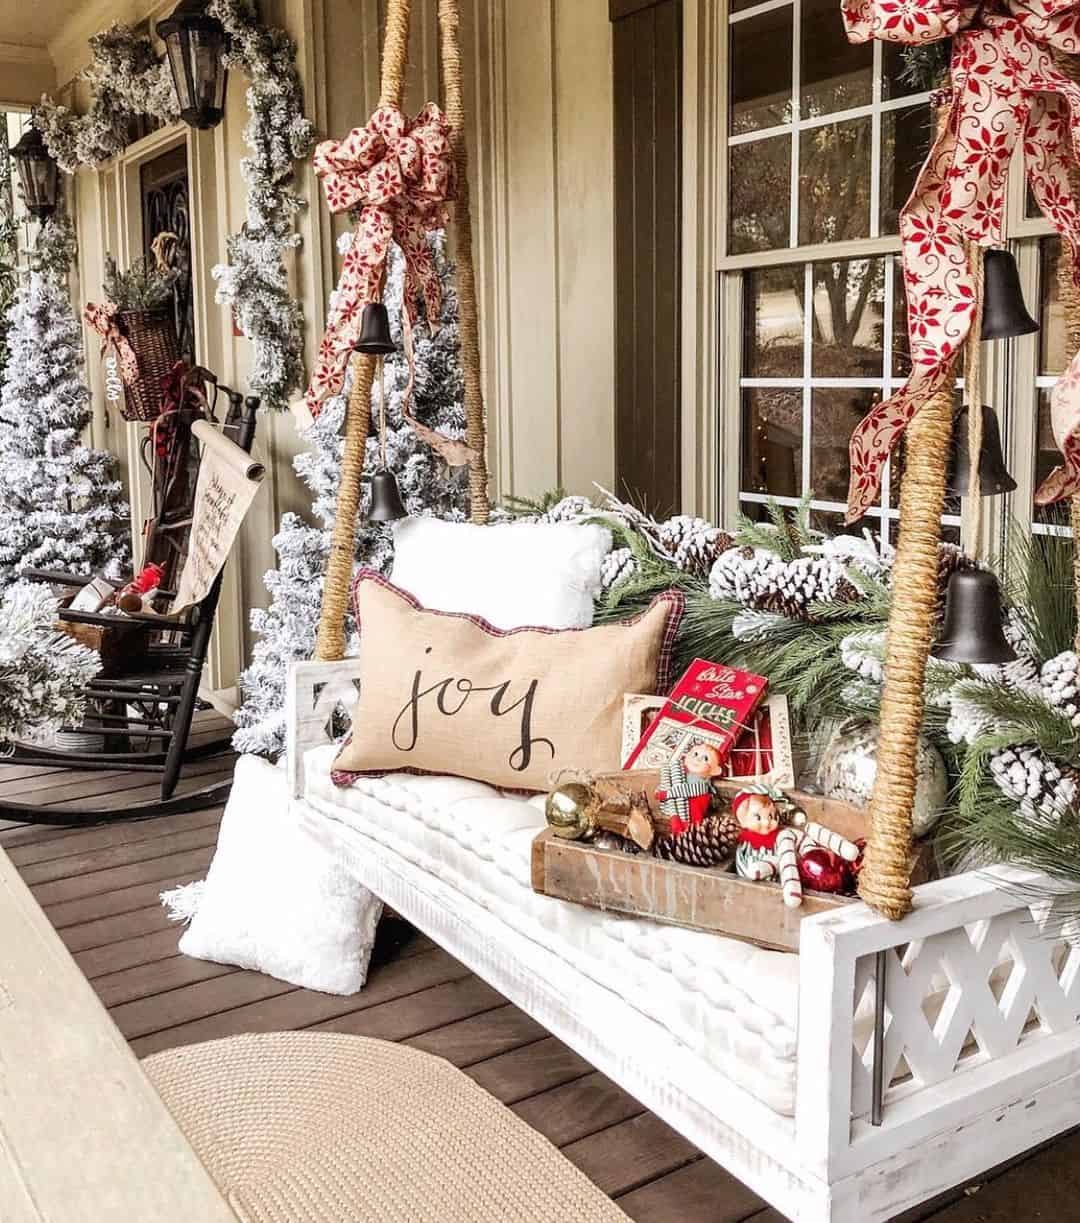 17 Farmhouse Porch Christmas Décor Ideas for a Festive Display